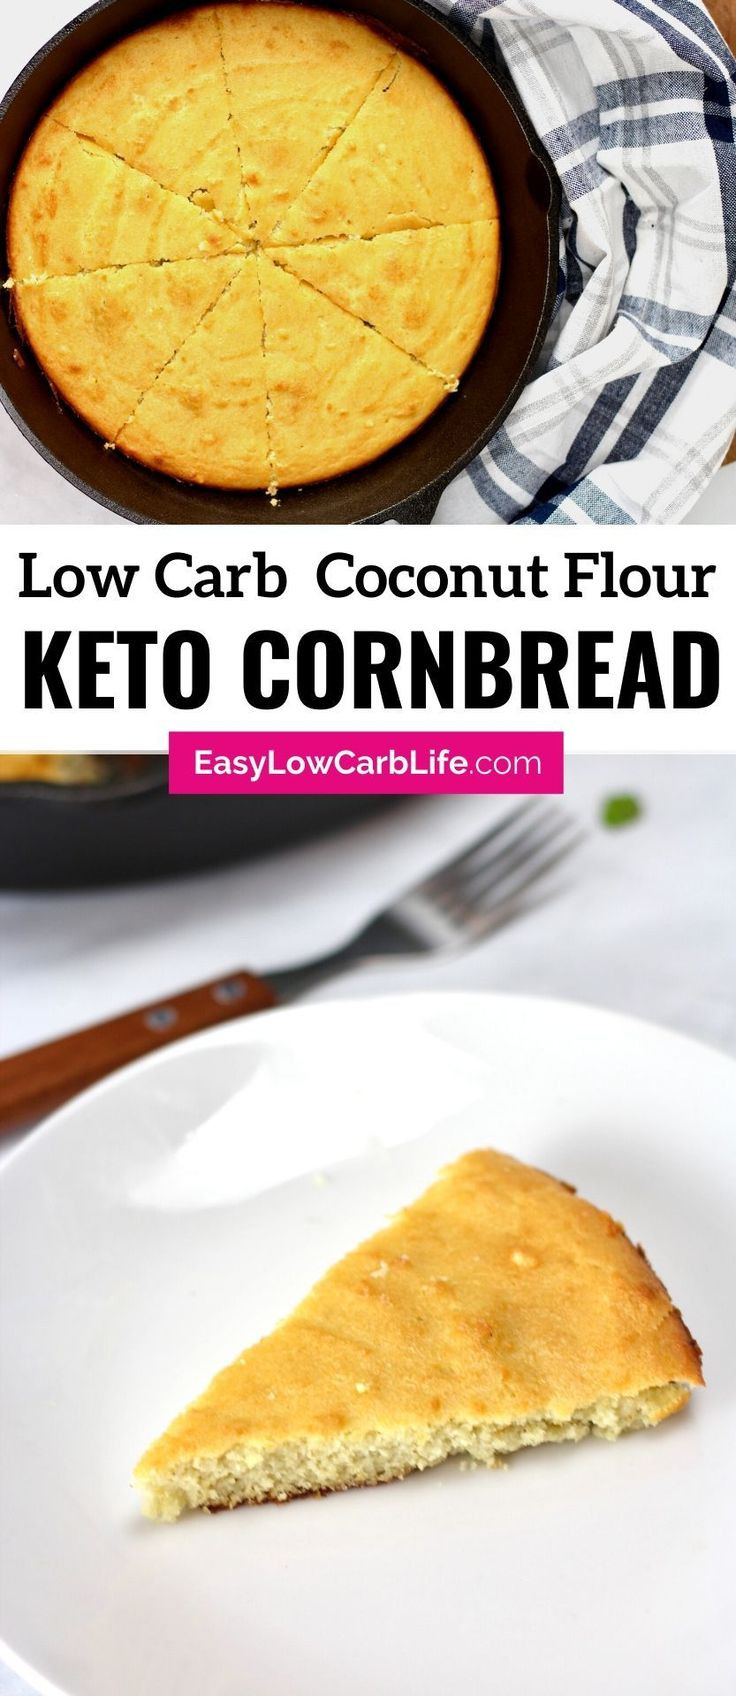 Keto Cornbread Coconut Flour
 Keto Low Carb Cornbread Recipe in 2020